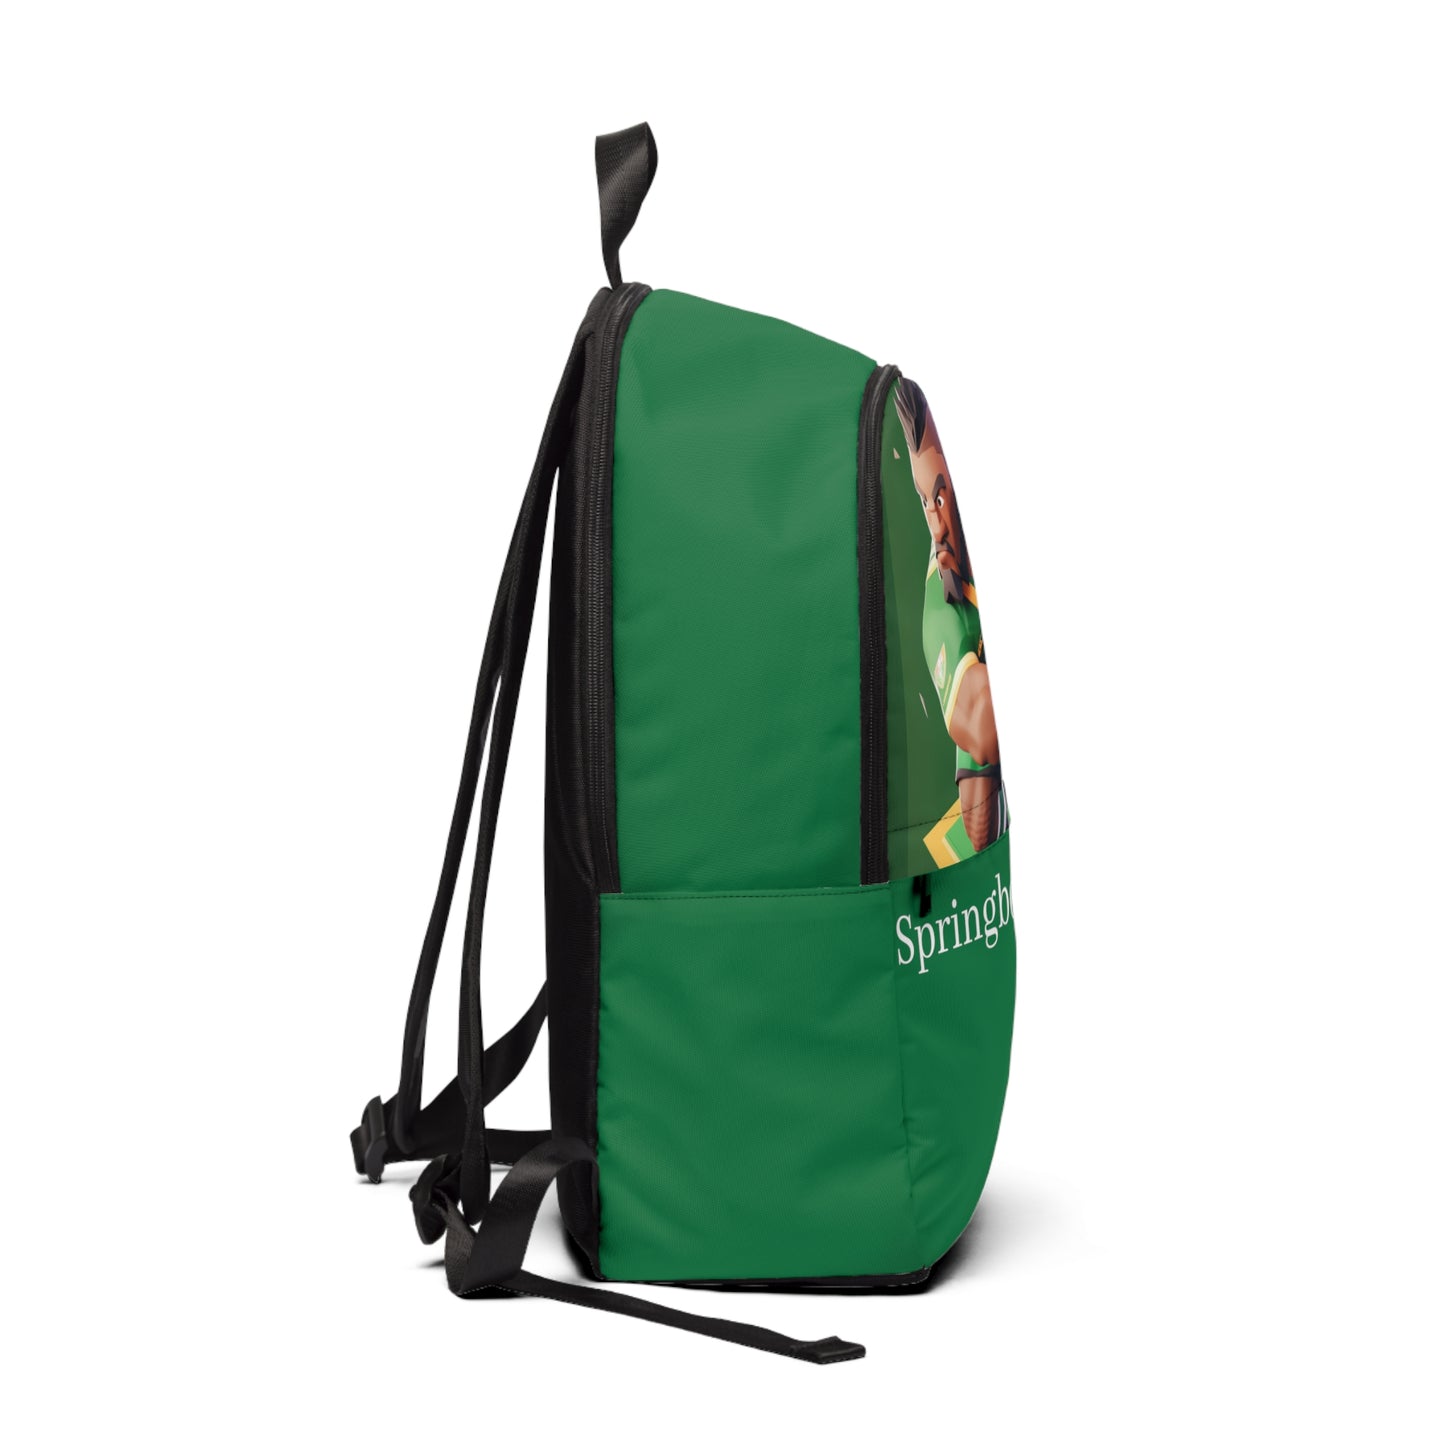 Springbok Backpack